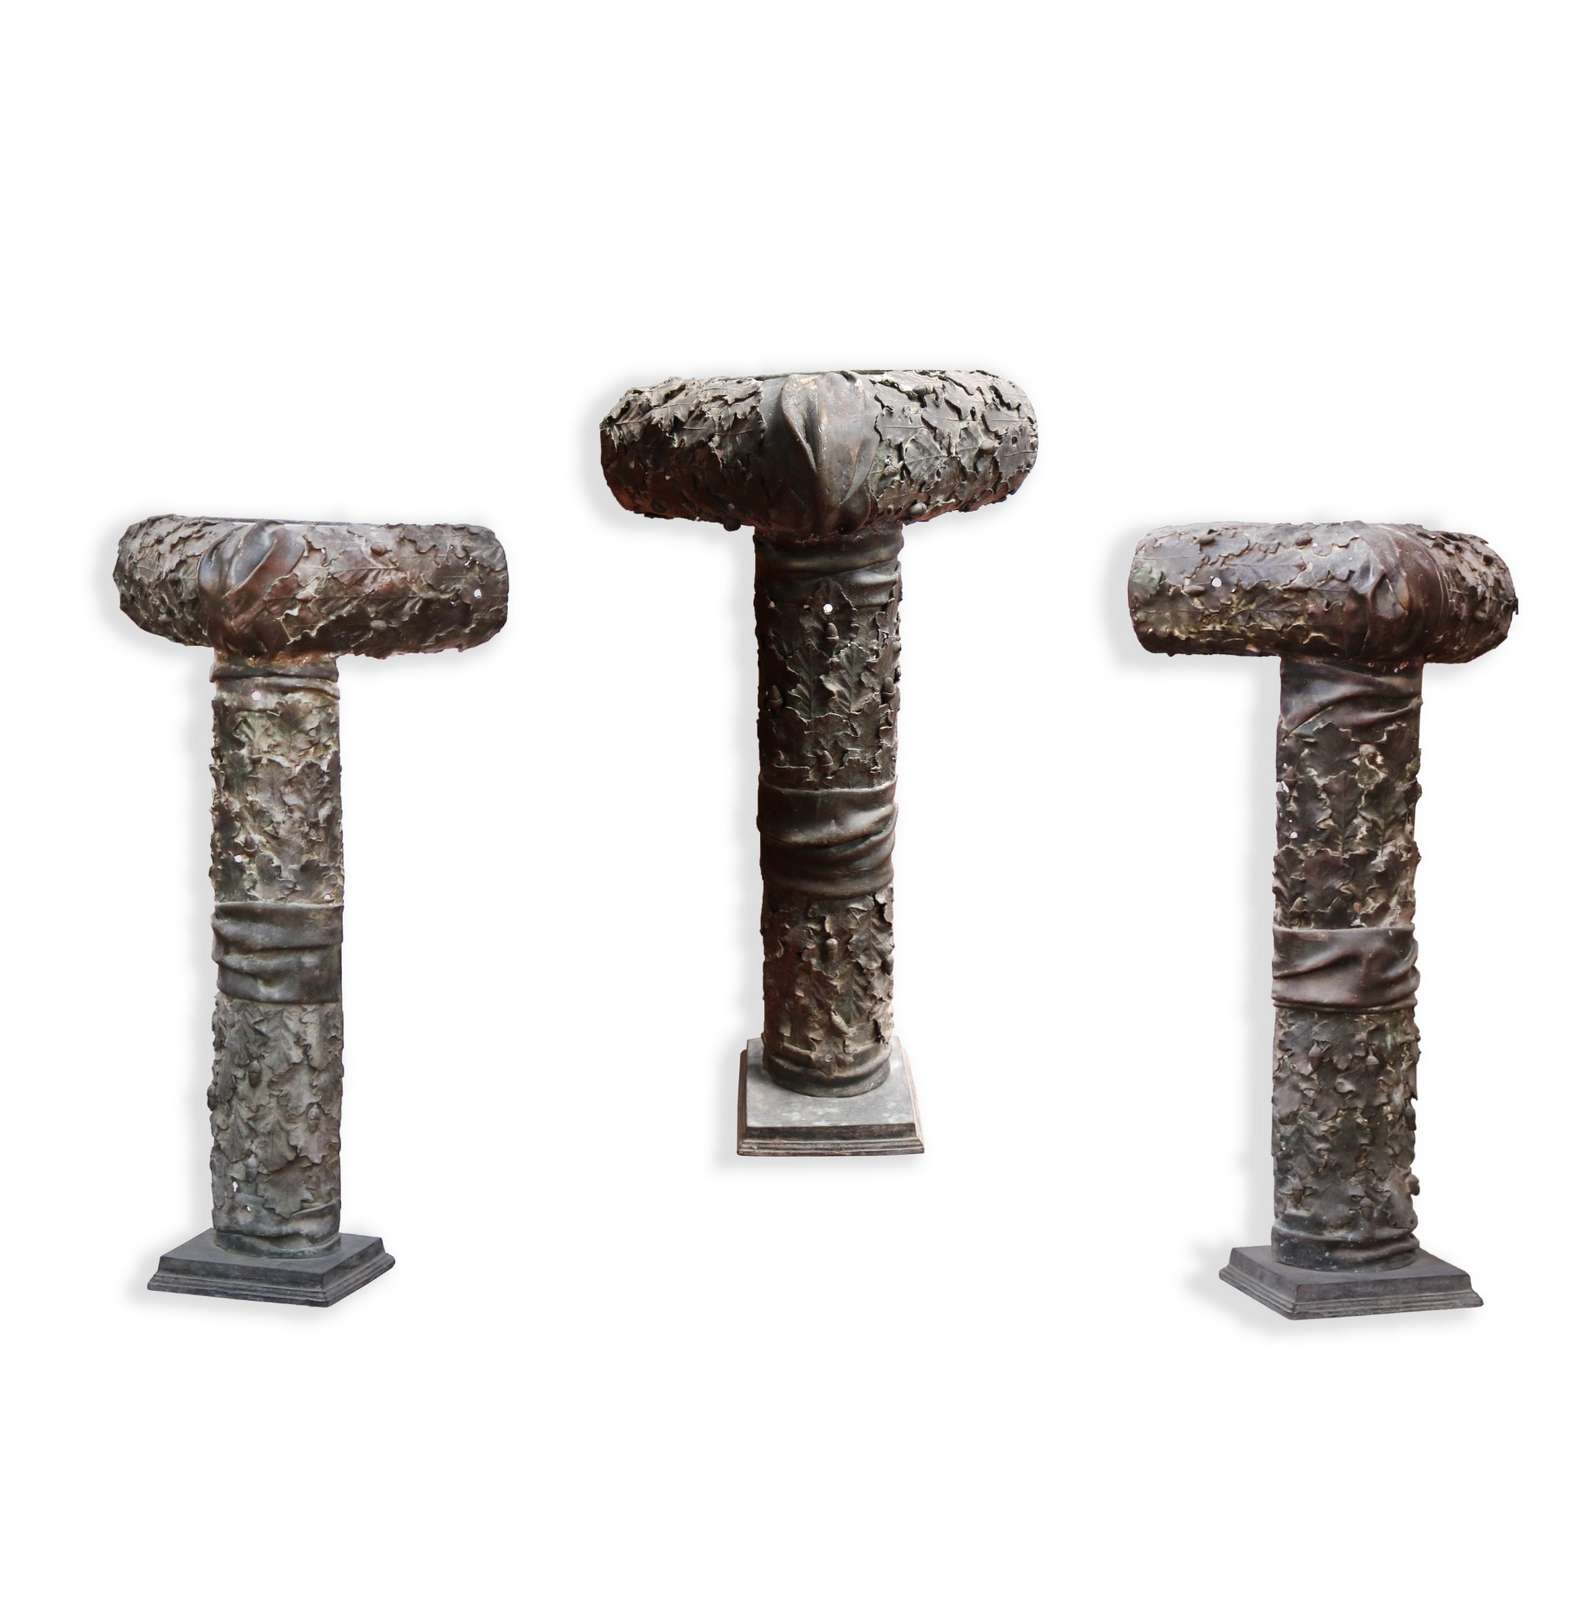 Antiche colonne angolari in bronzo. Epoca Liberty. - Colonne antiche - Architettura - Prodotti - Antichità Fiorillo